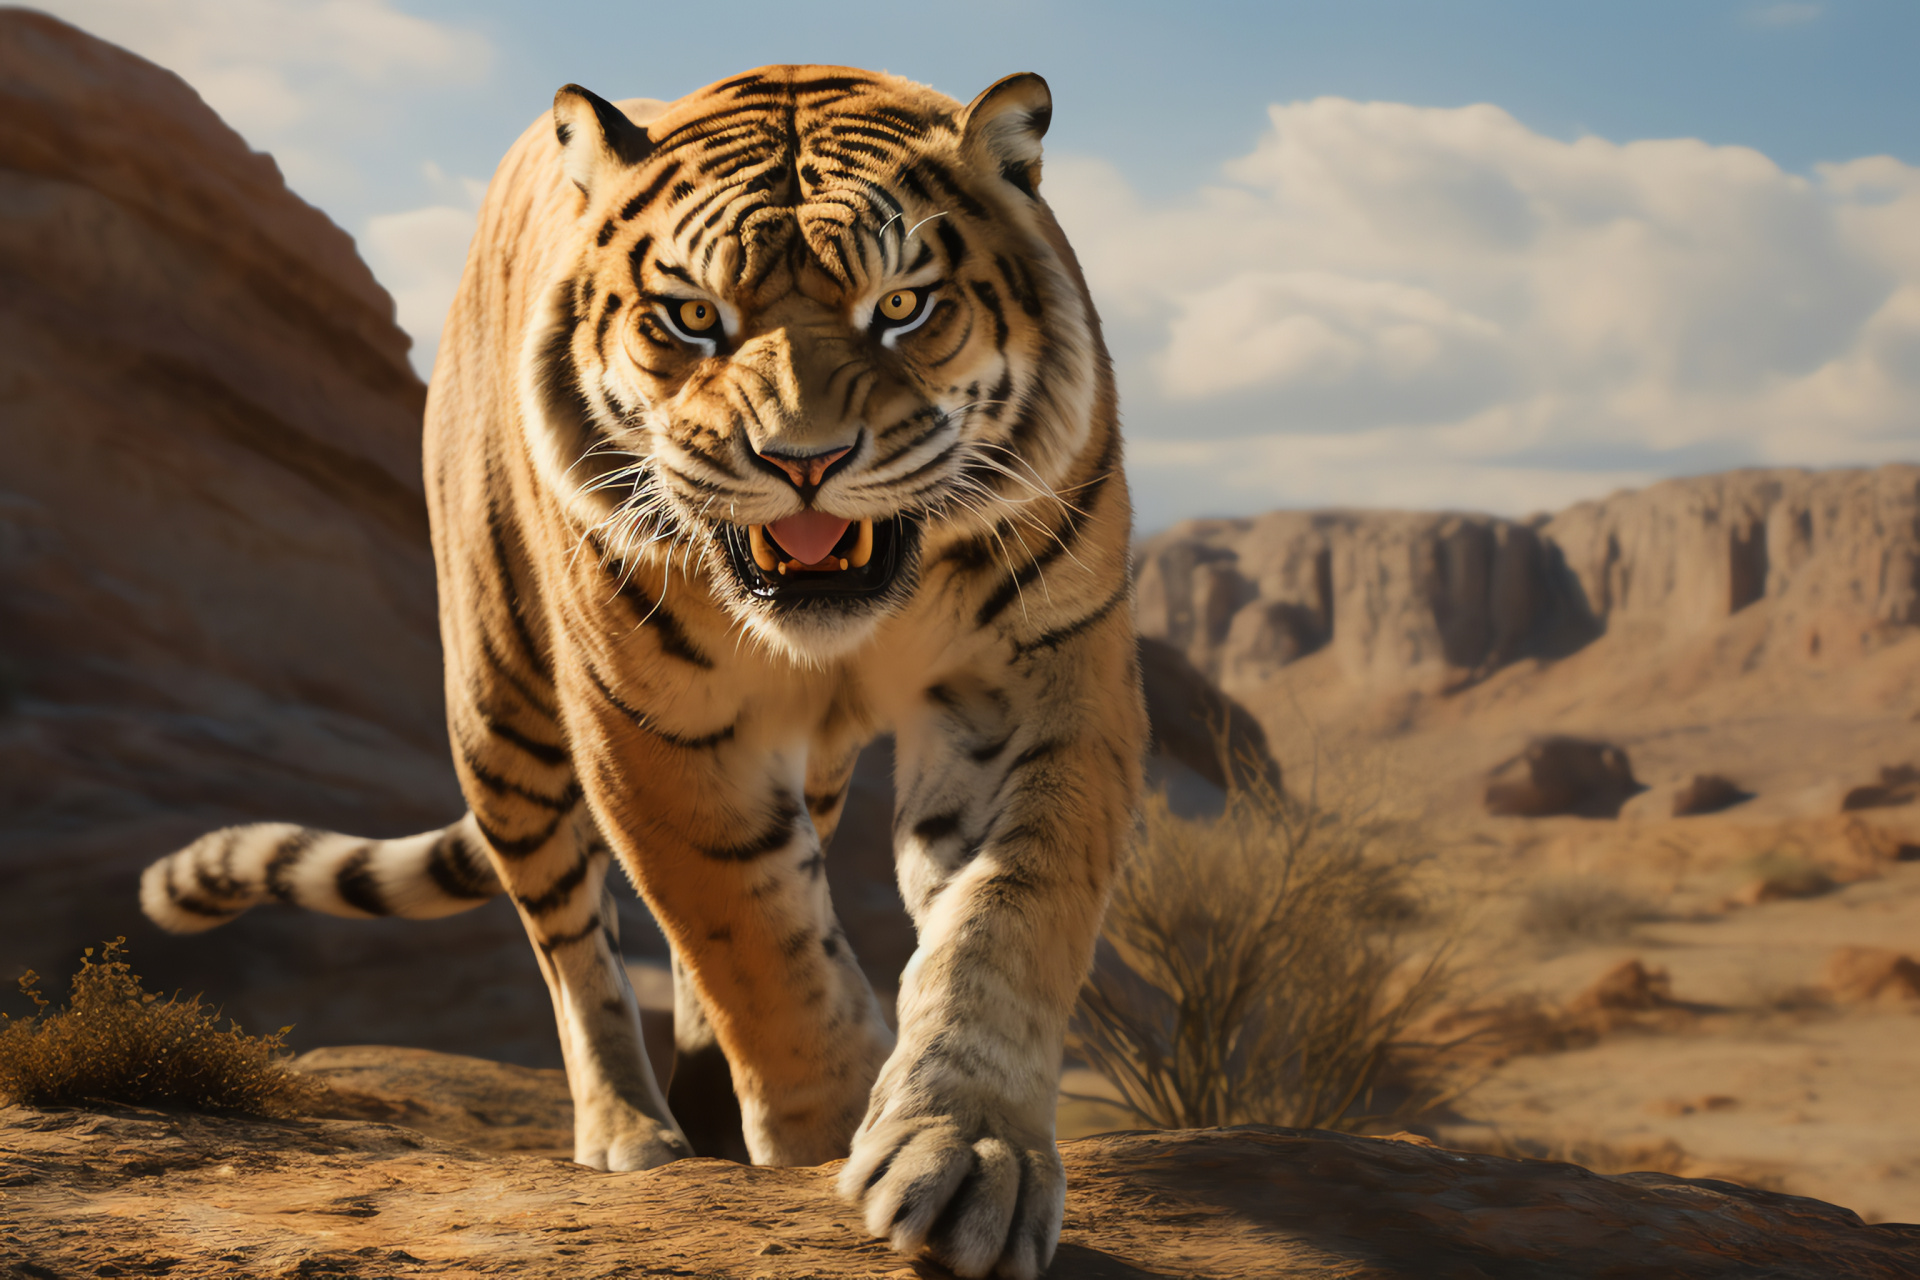 Saber Tooth Tiger, Ancient carnivore, Fossilized specimen, Big cat evolution, Desert backdrop, HD Desktop Wallpaper